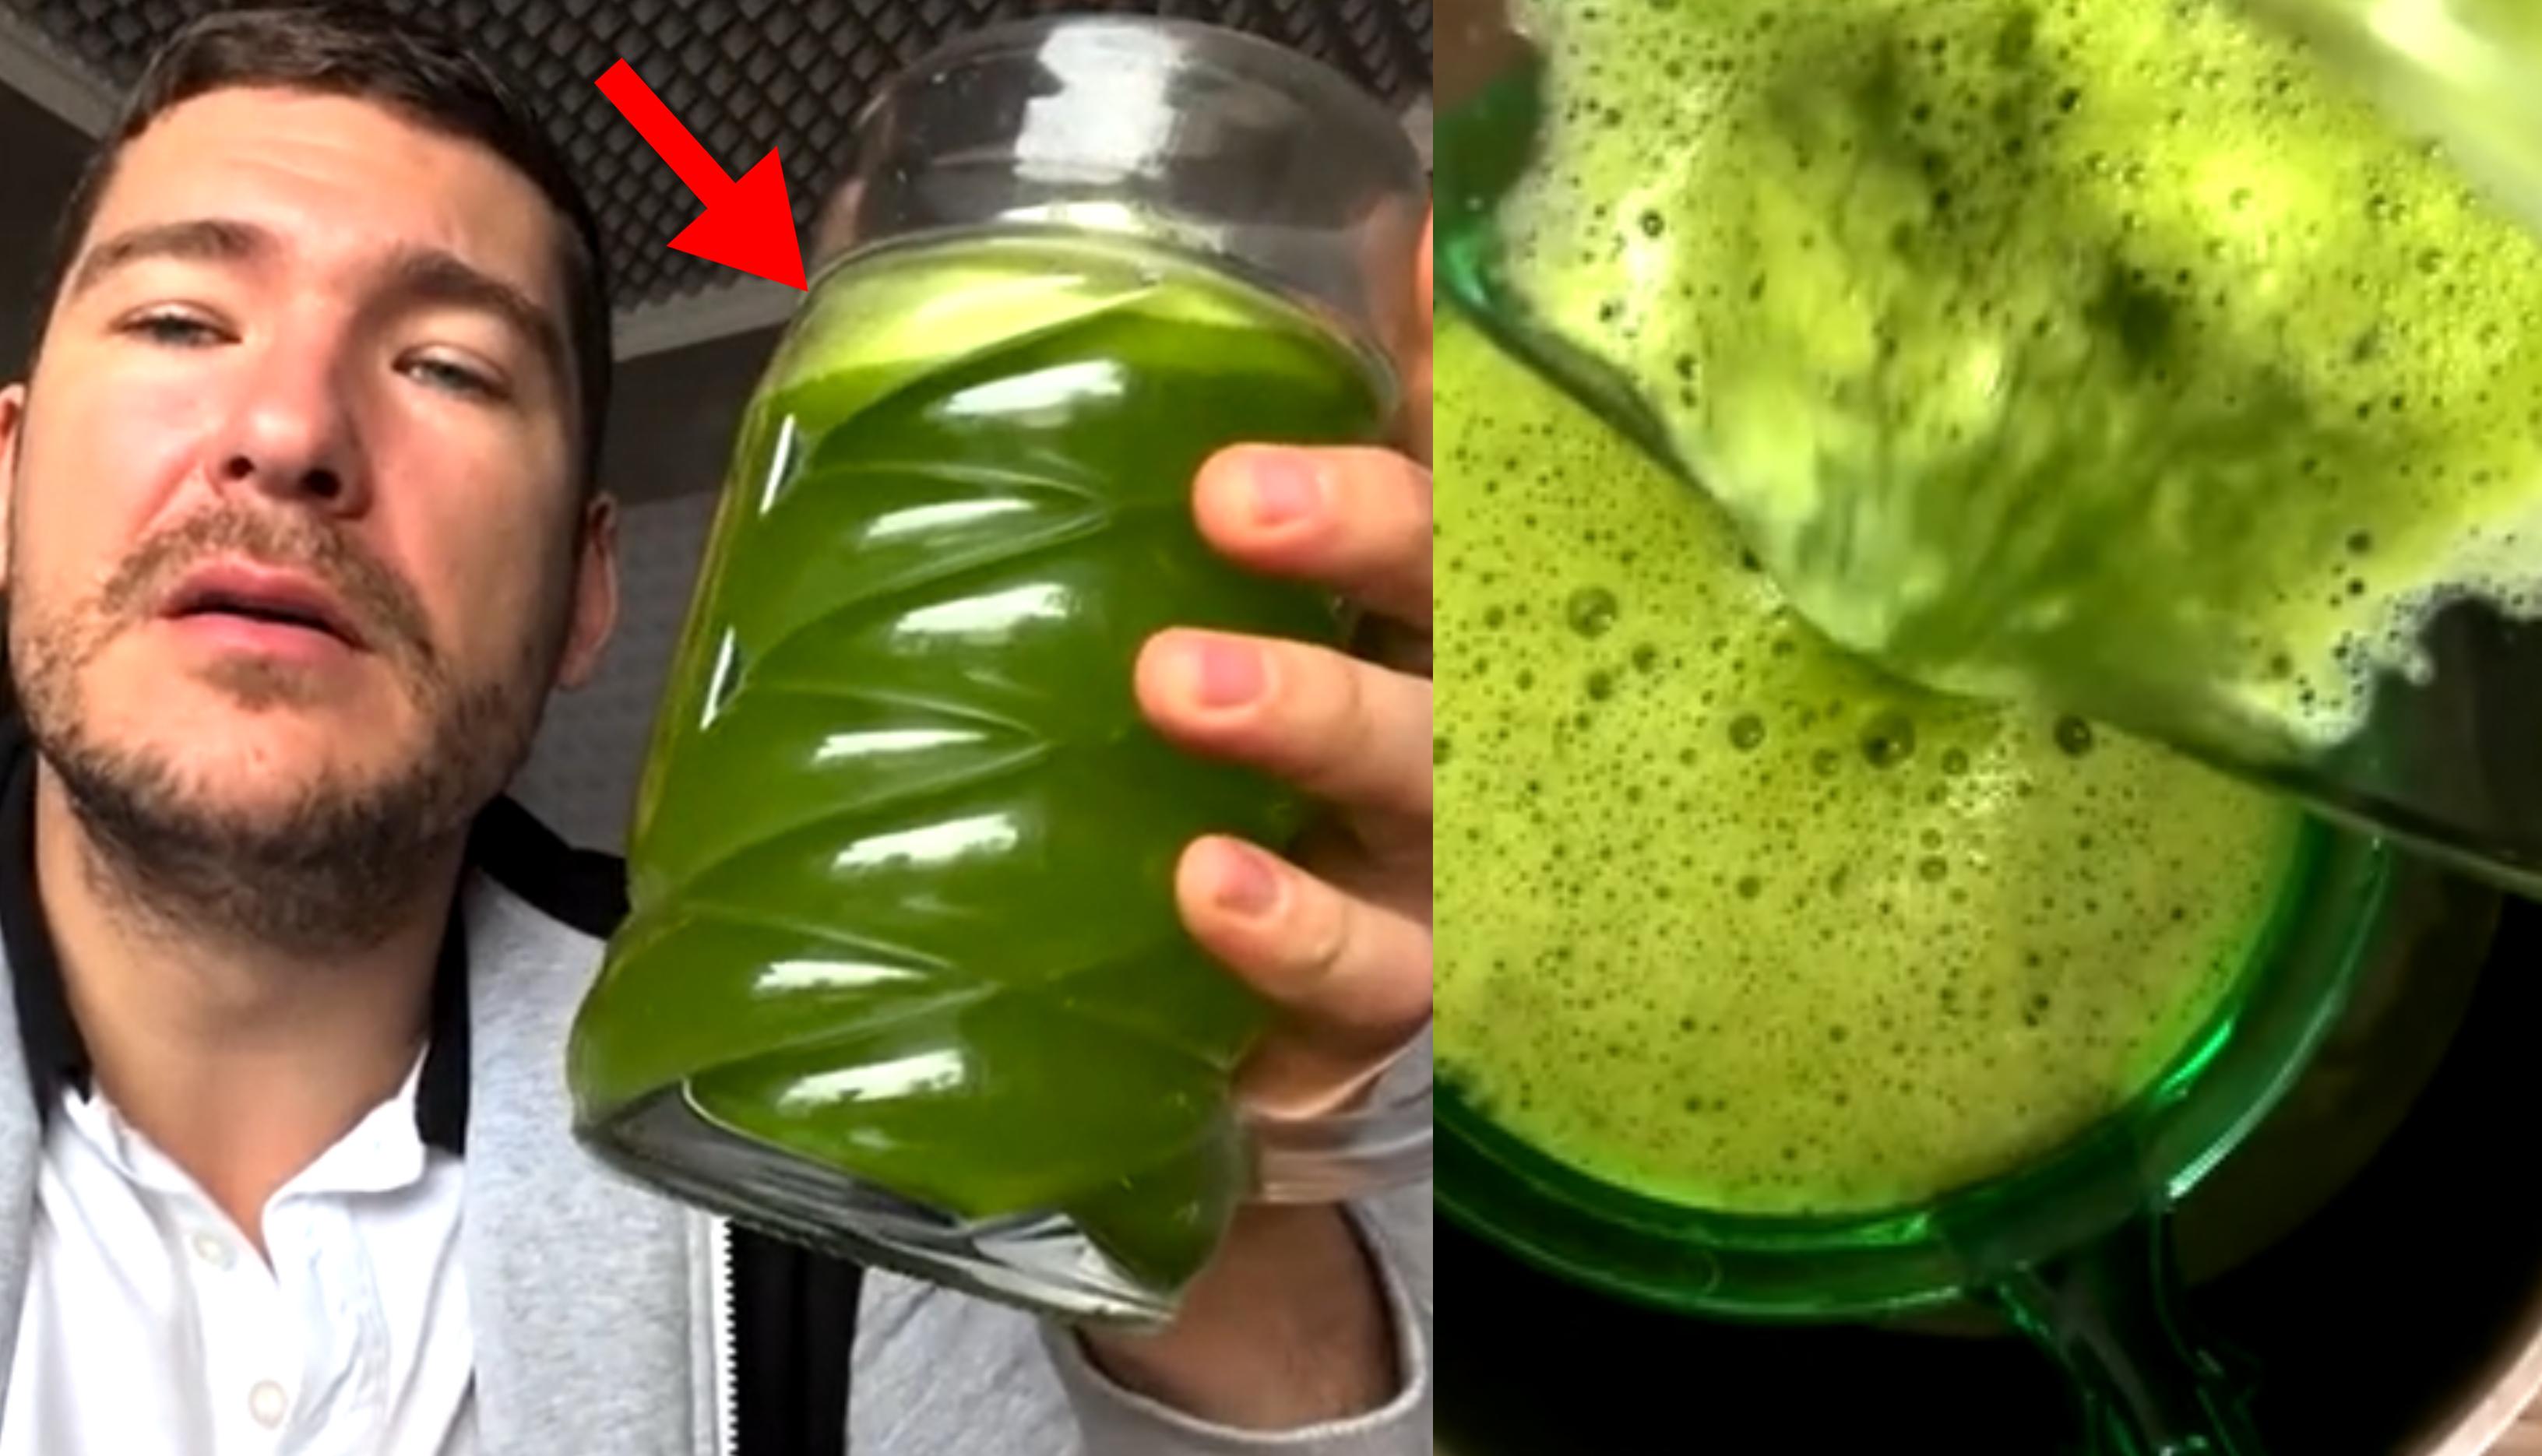 Ce este sucul verde pe care îl consuma Călin Donca în fiecare dimineață. El numește băutura o "licoare" | VIDEO